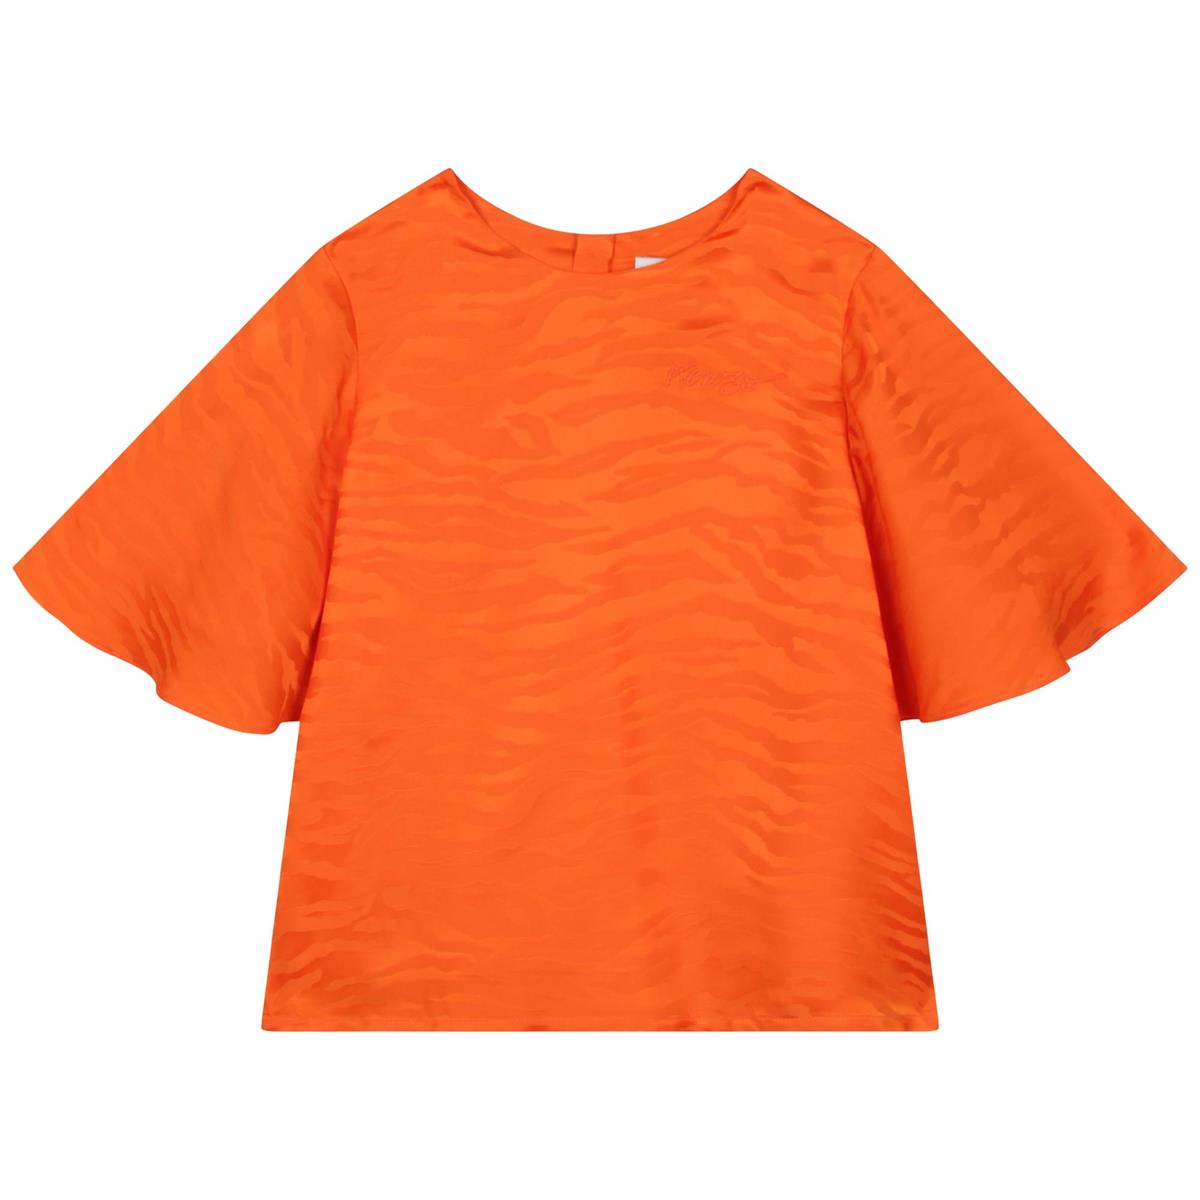 Girls Orange T-Shirt